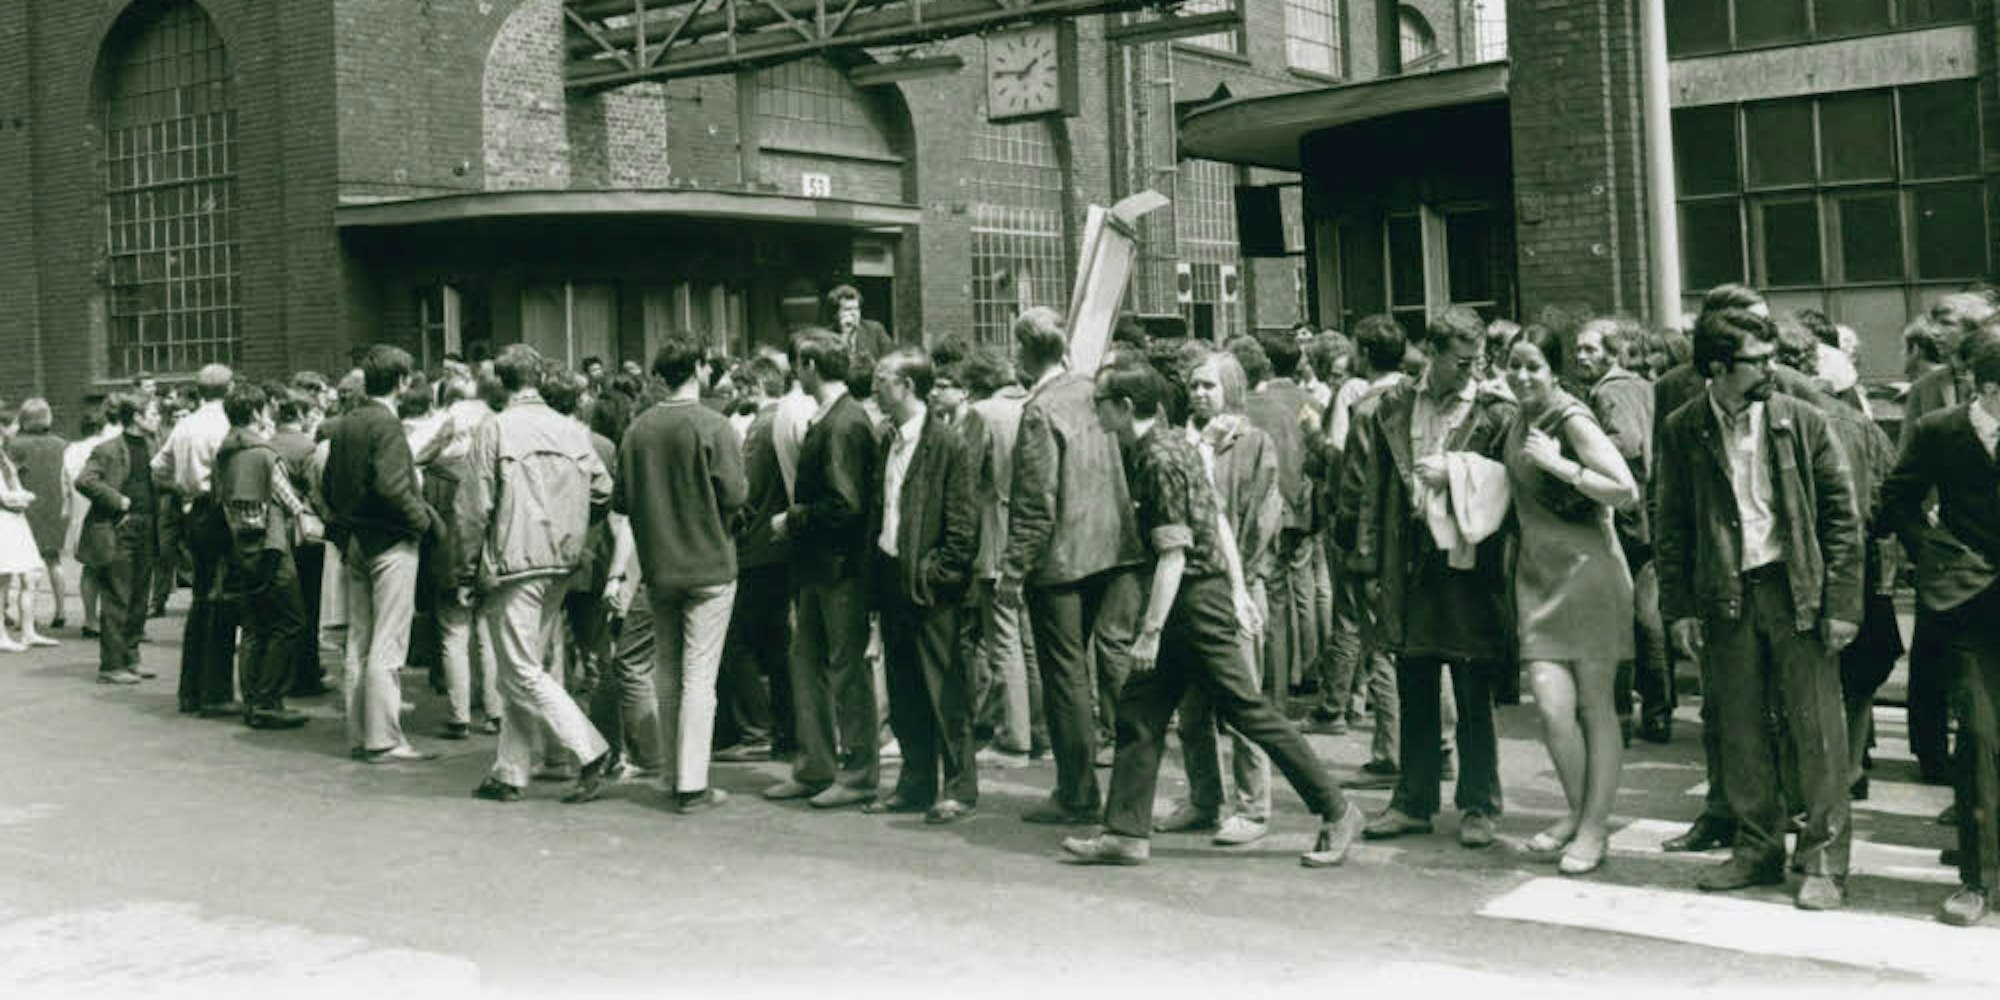 Warten vor dem Werkstor: Studenten versammelten sich im Mai 1968 vor dem Kölner KHD-Werk. Sie versuchten, Arbeiter zur Teilnahme an Anti-Notstandsdemonstrationen zu bewegen